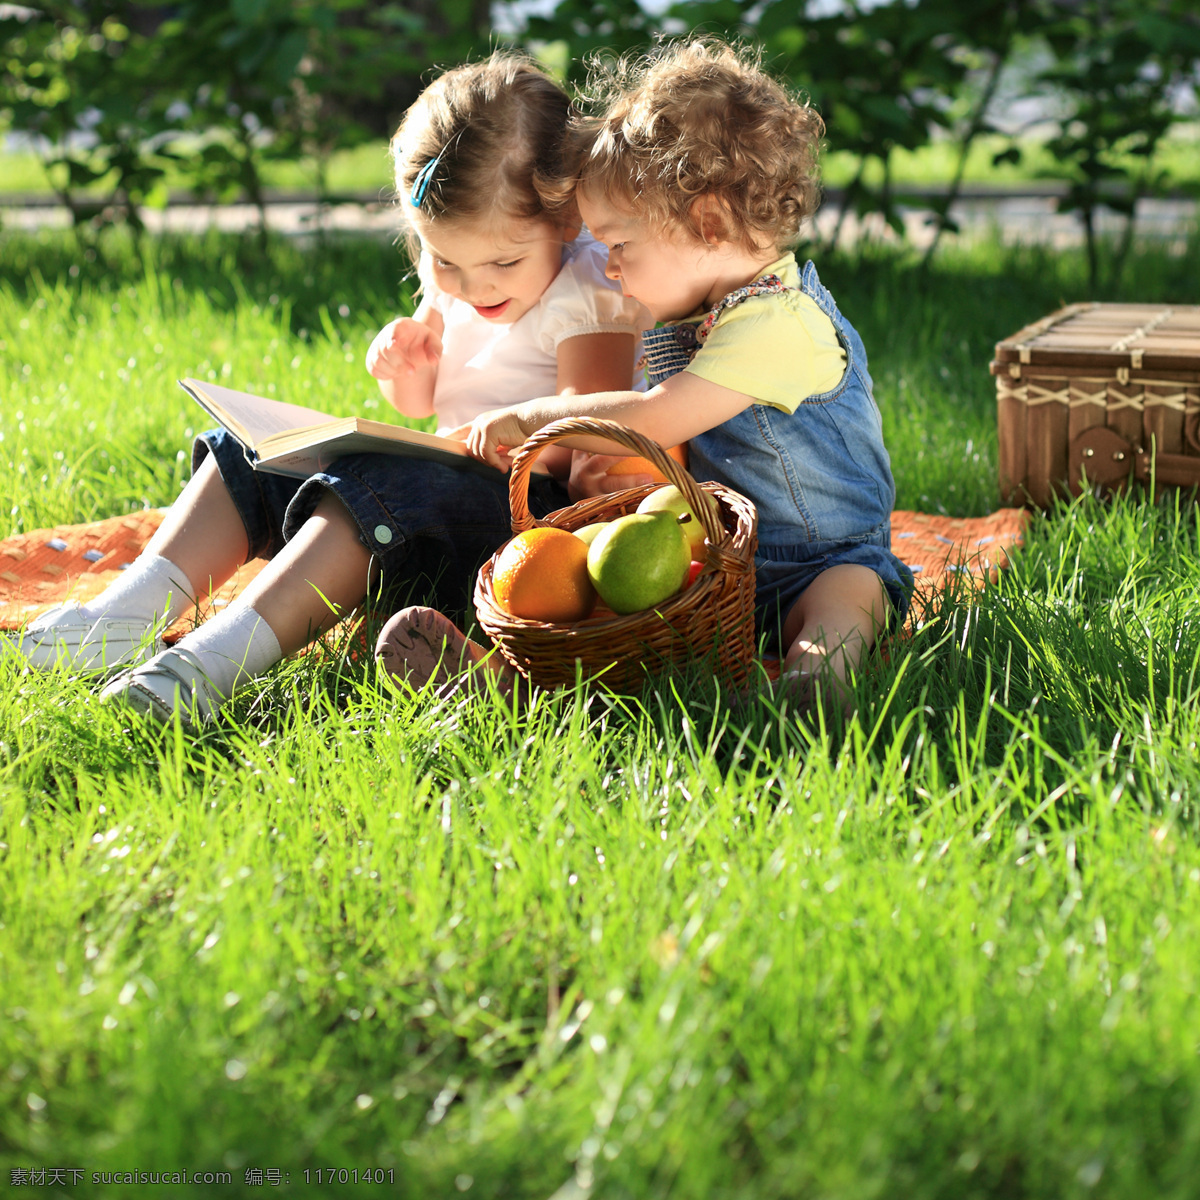 草坪 上 看书 小伙伴 朋友 儿童幼儿 书本 水果 竹篮 儿童图片 人物图片